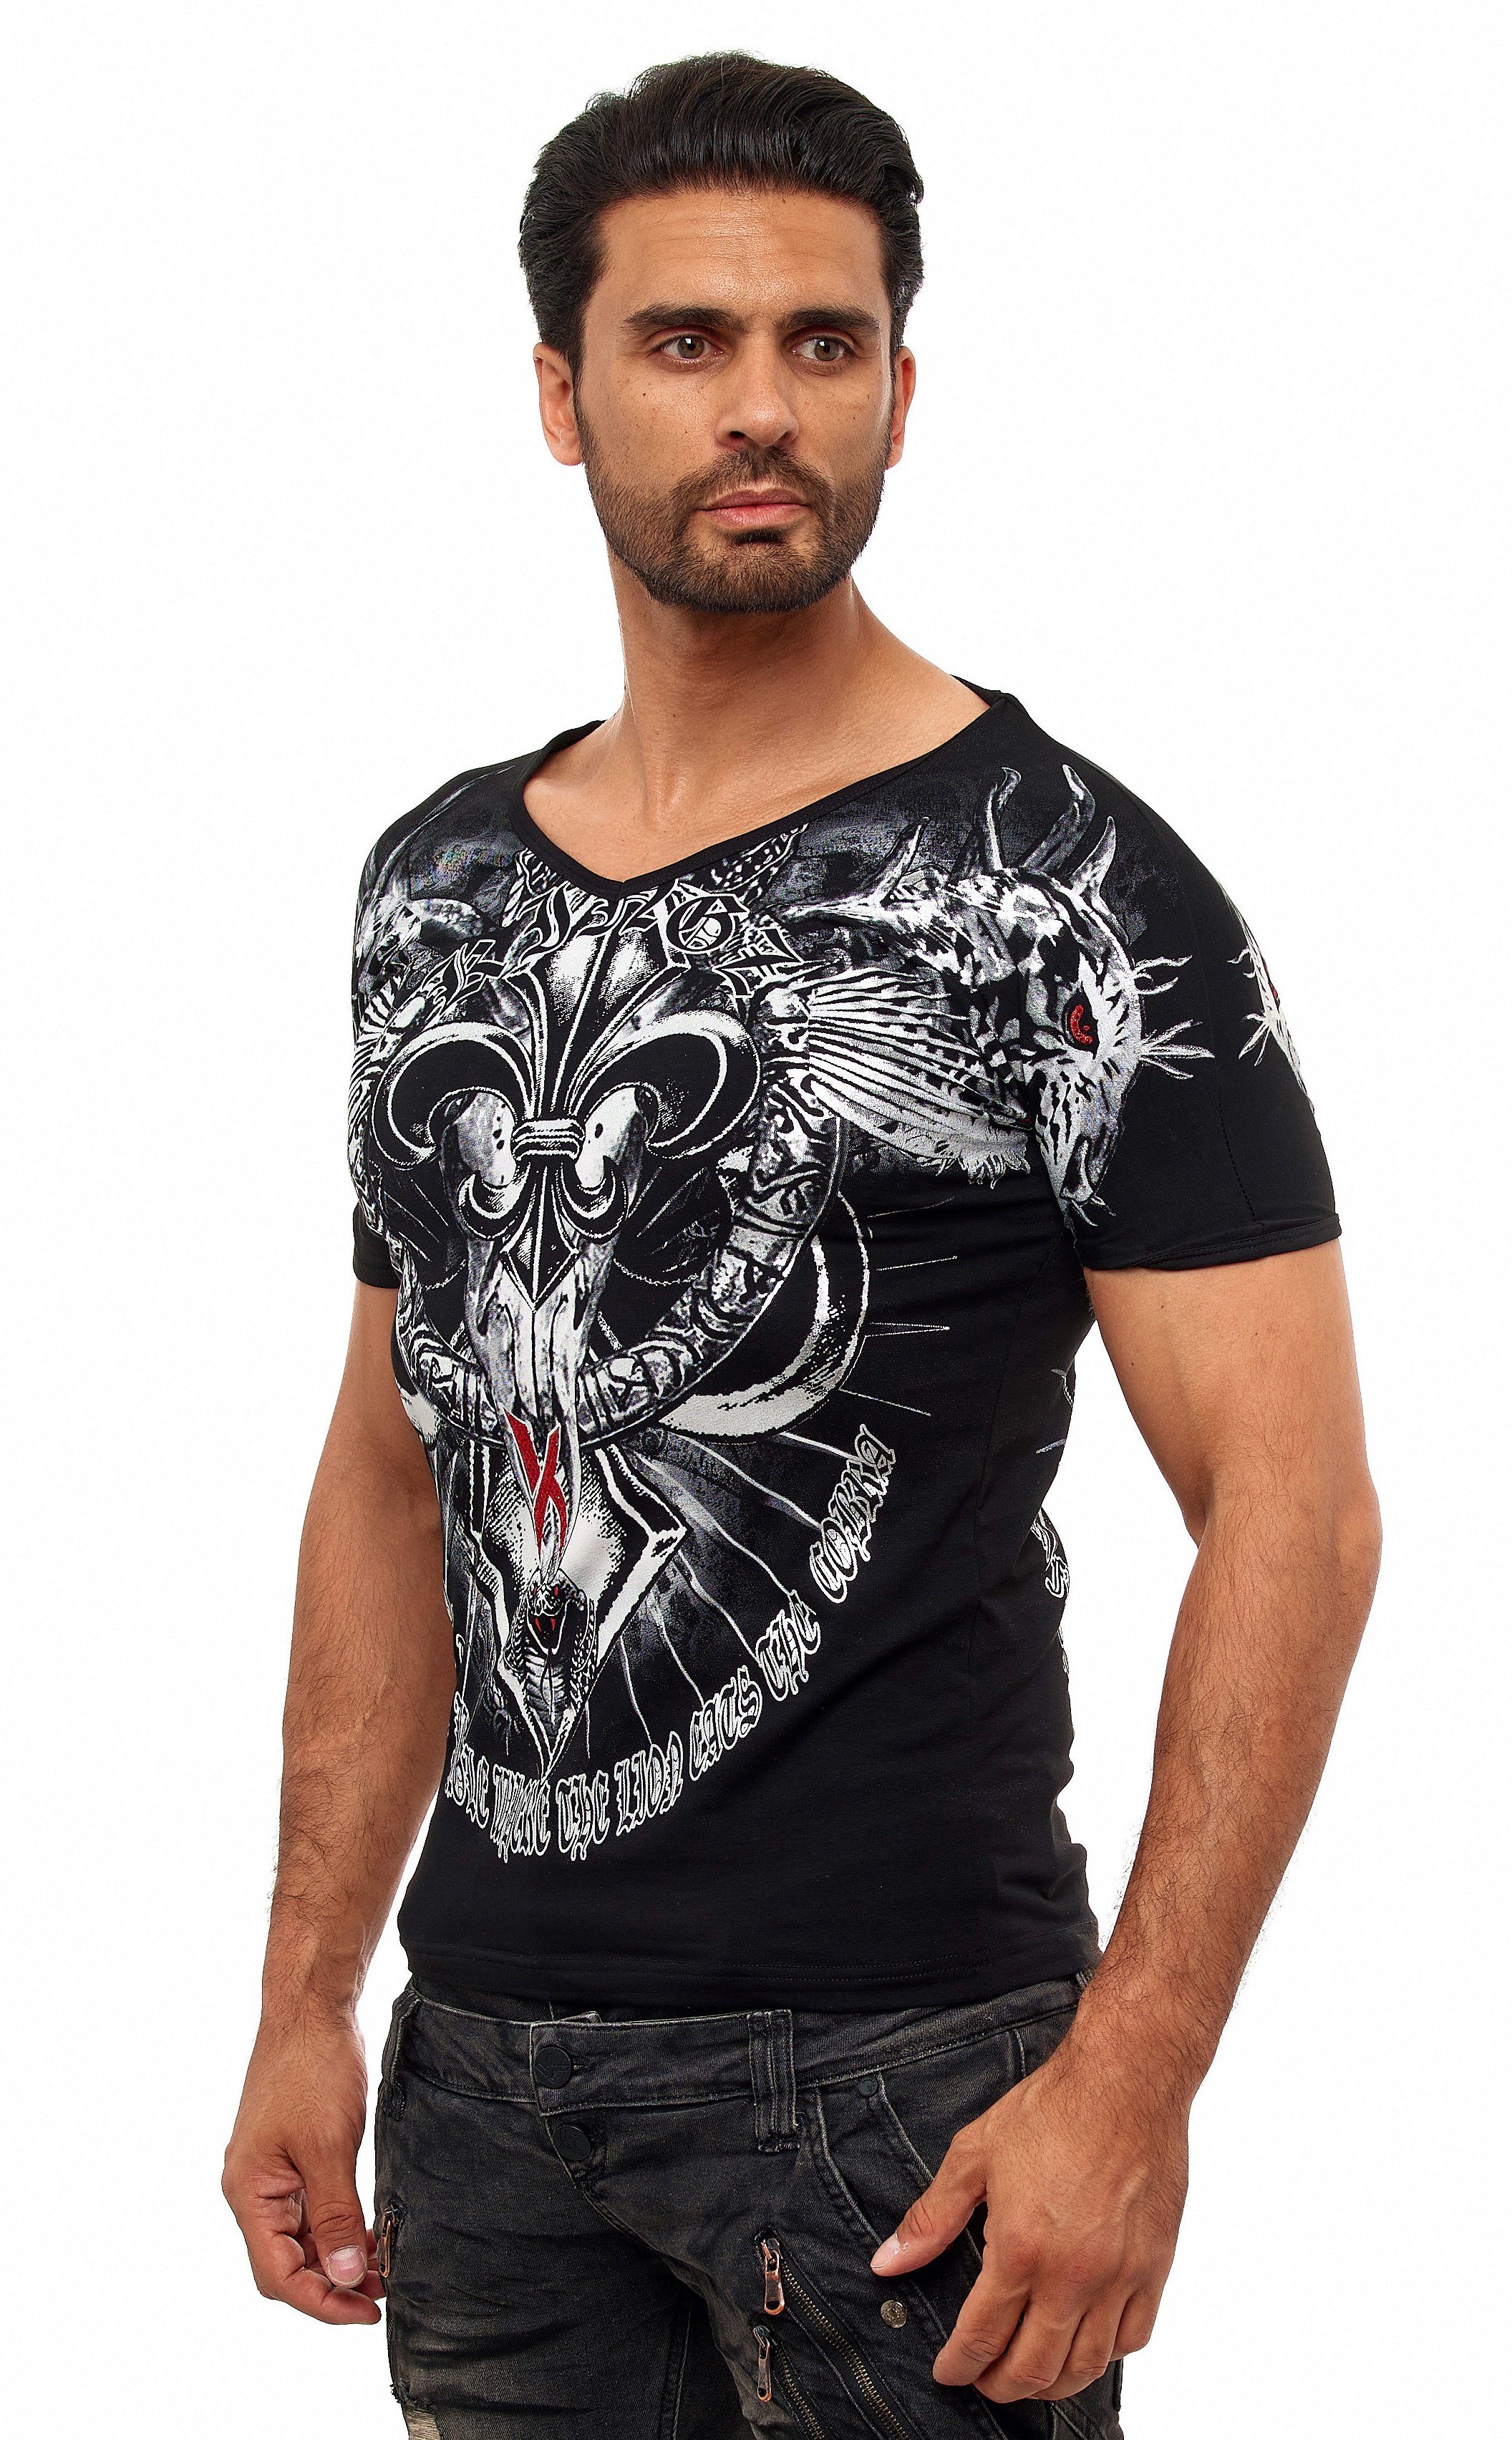 ausgefallenem T-Shirt KINGZ Cobra-Lilien-Print mit schwarz-silberfarben